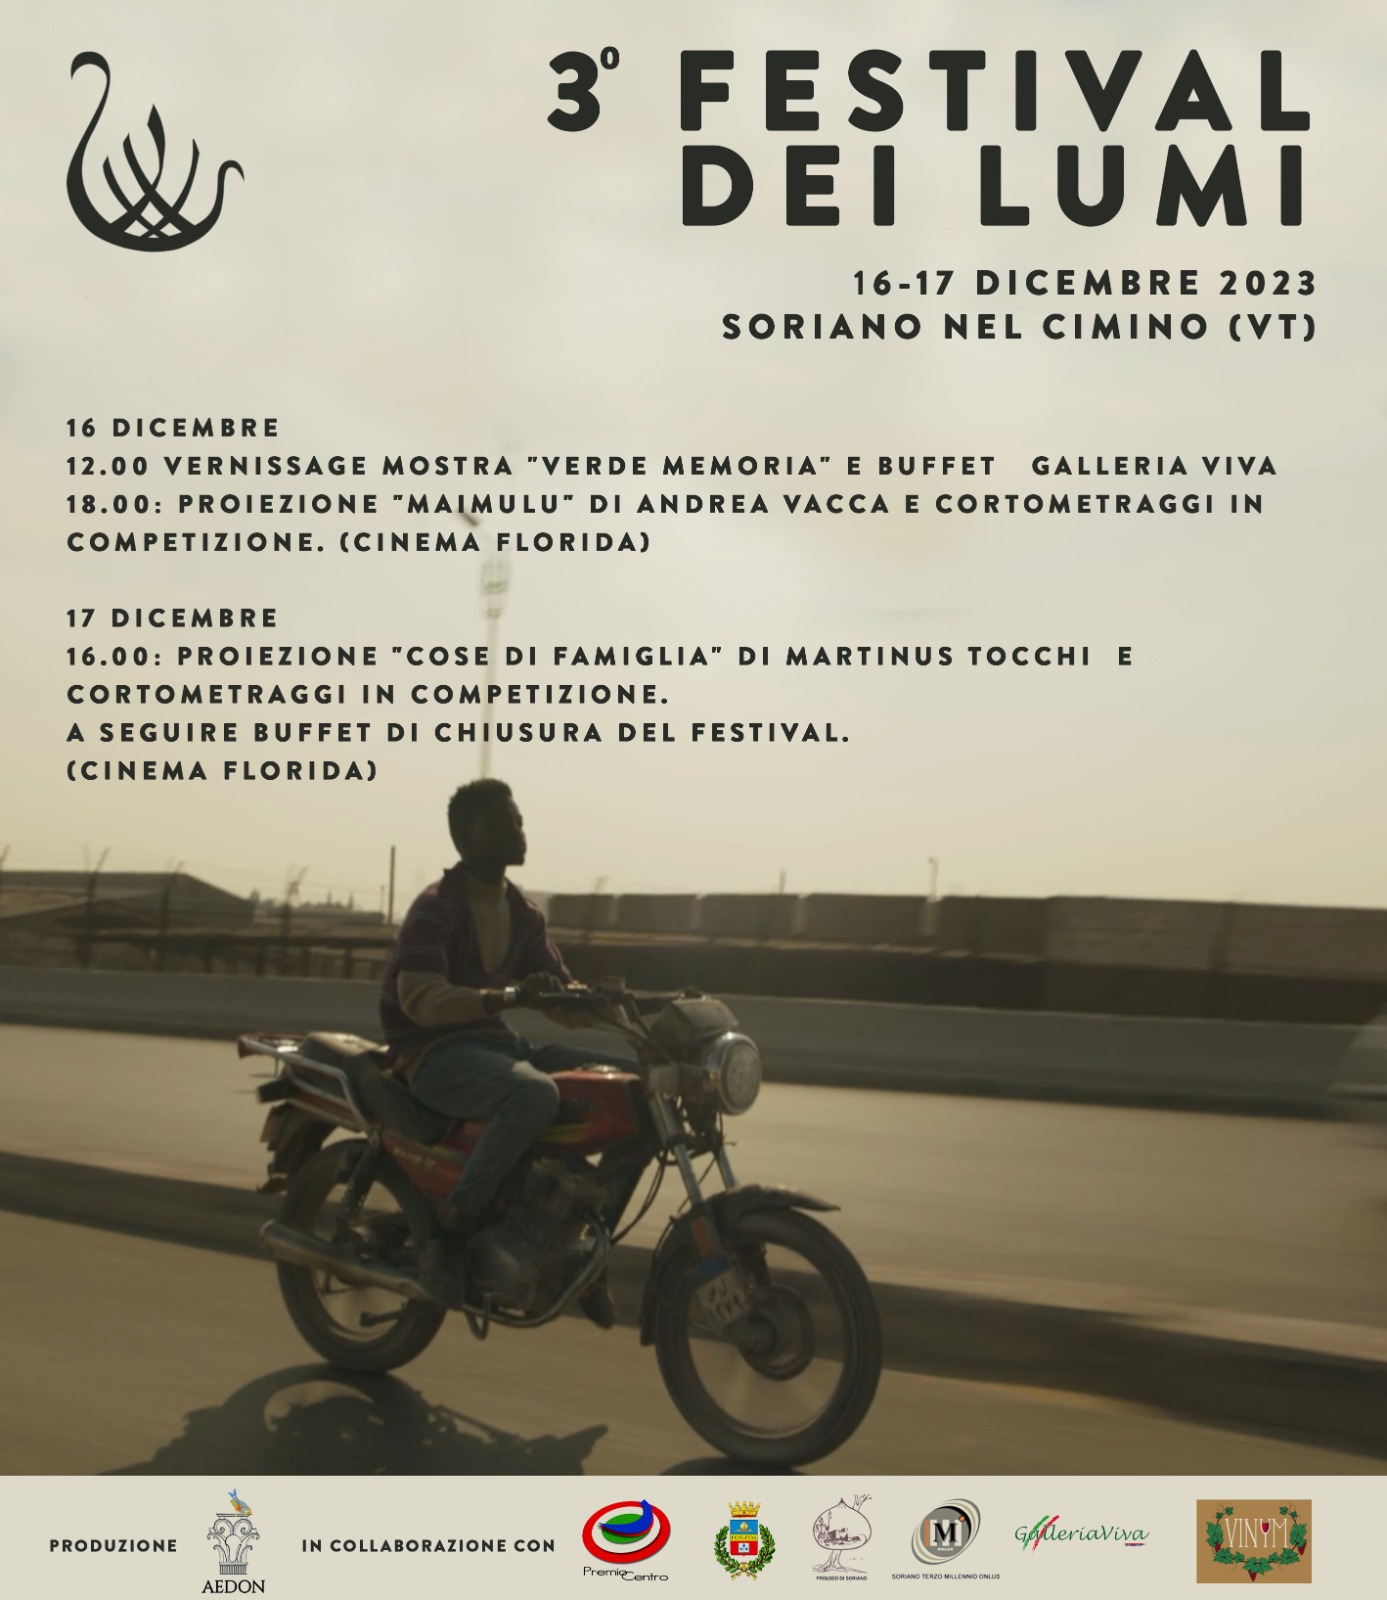 3° Festival dei Lumi: Cinema e arte contemporanea a Soriano nel Cimino